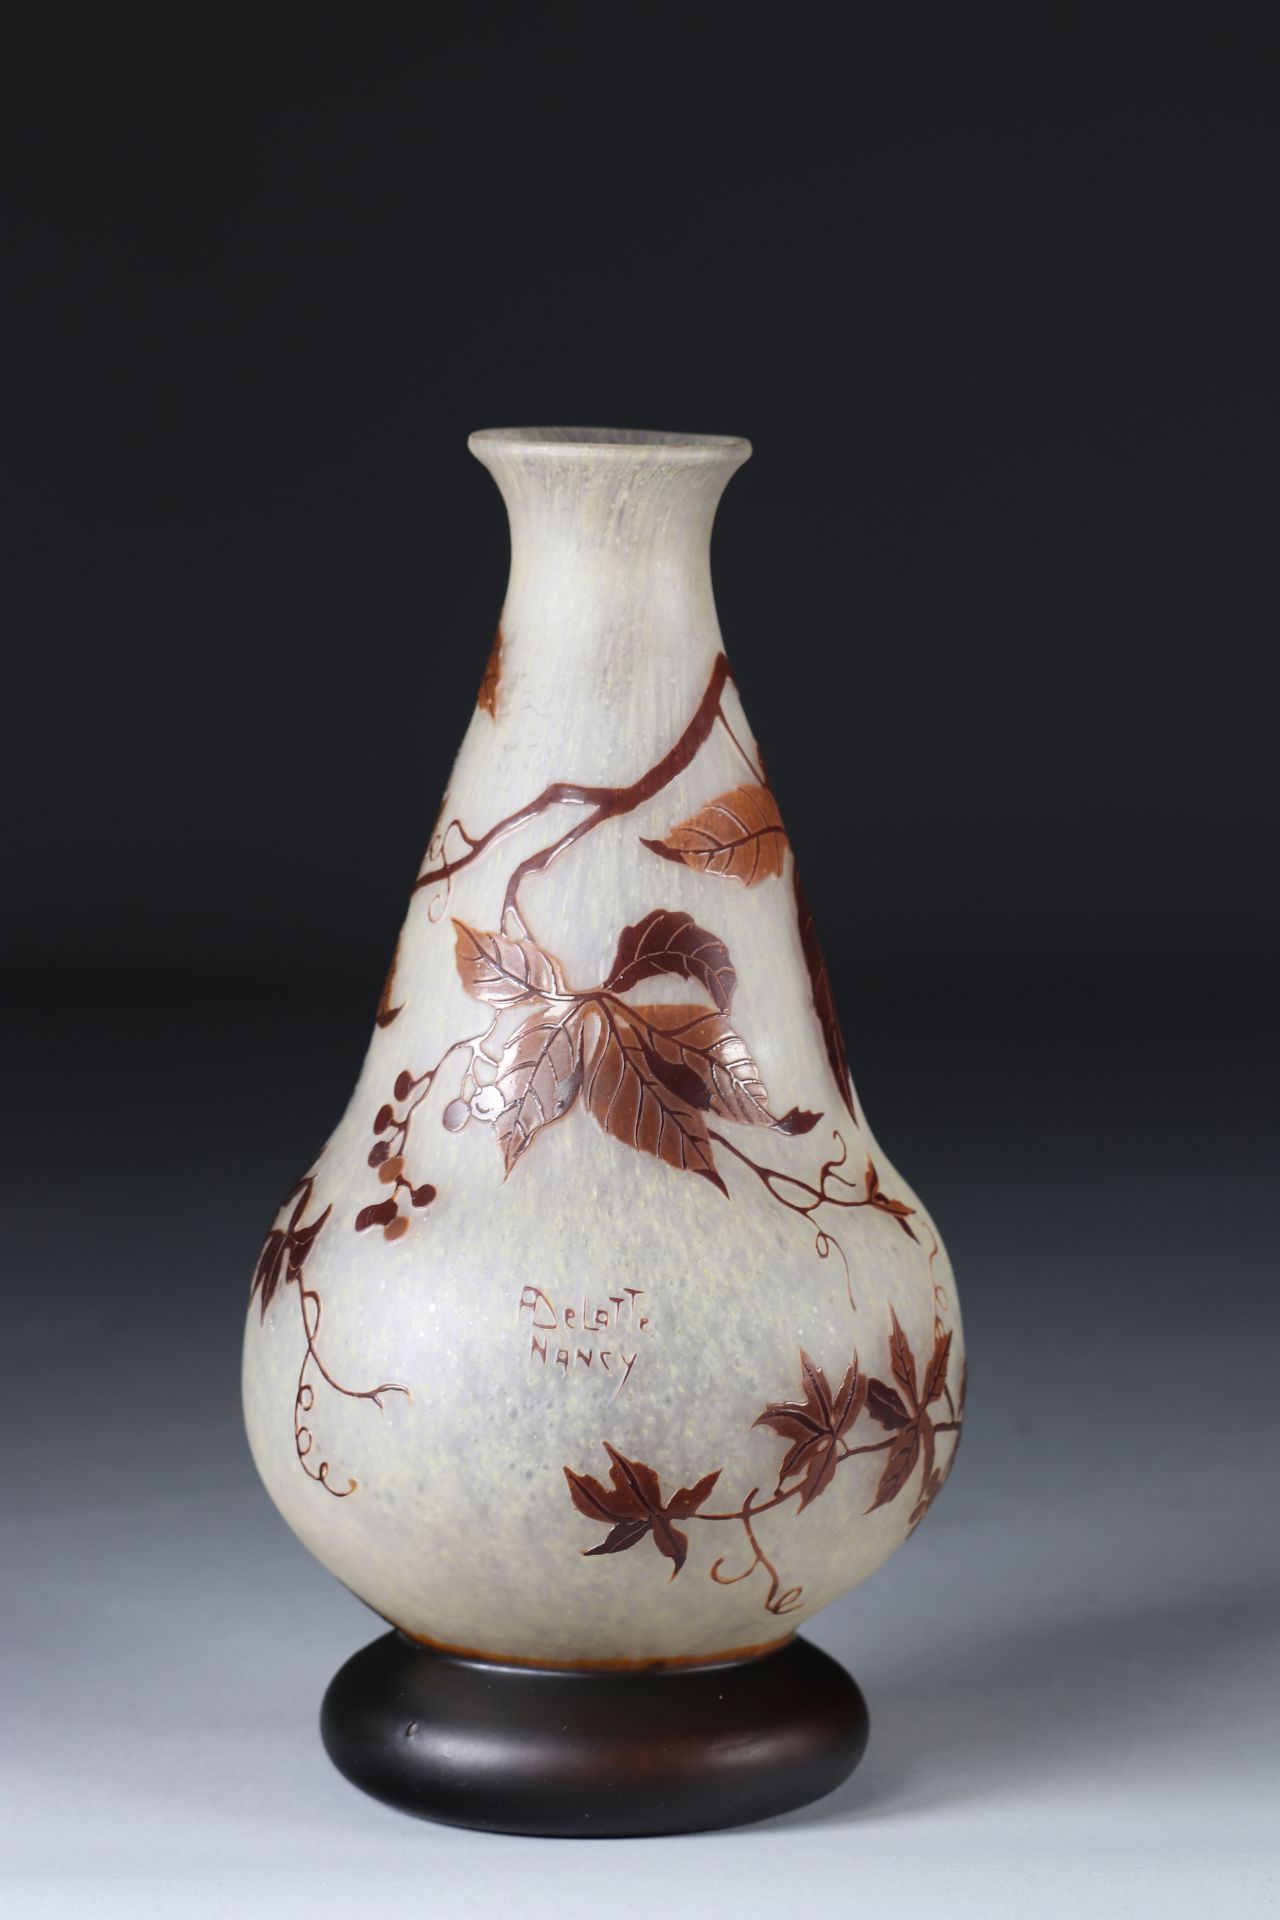 Andre Delatte etched glass vase in floral design cameo - Image 3 of 3